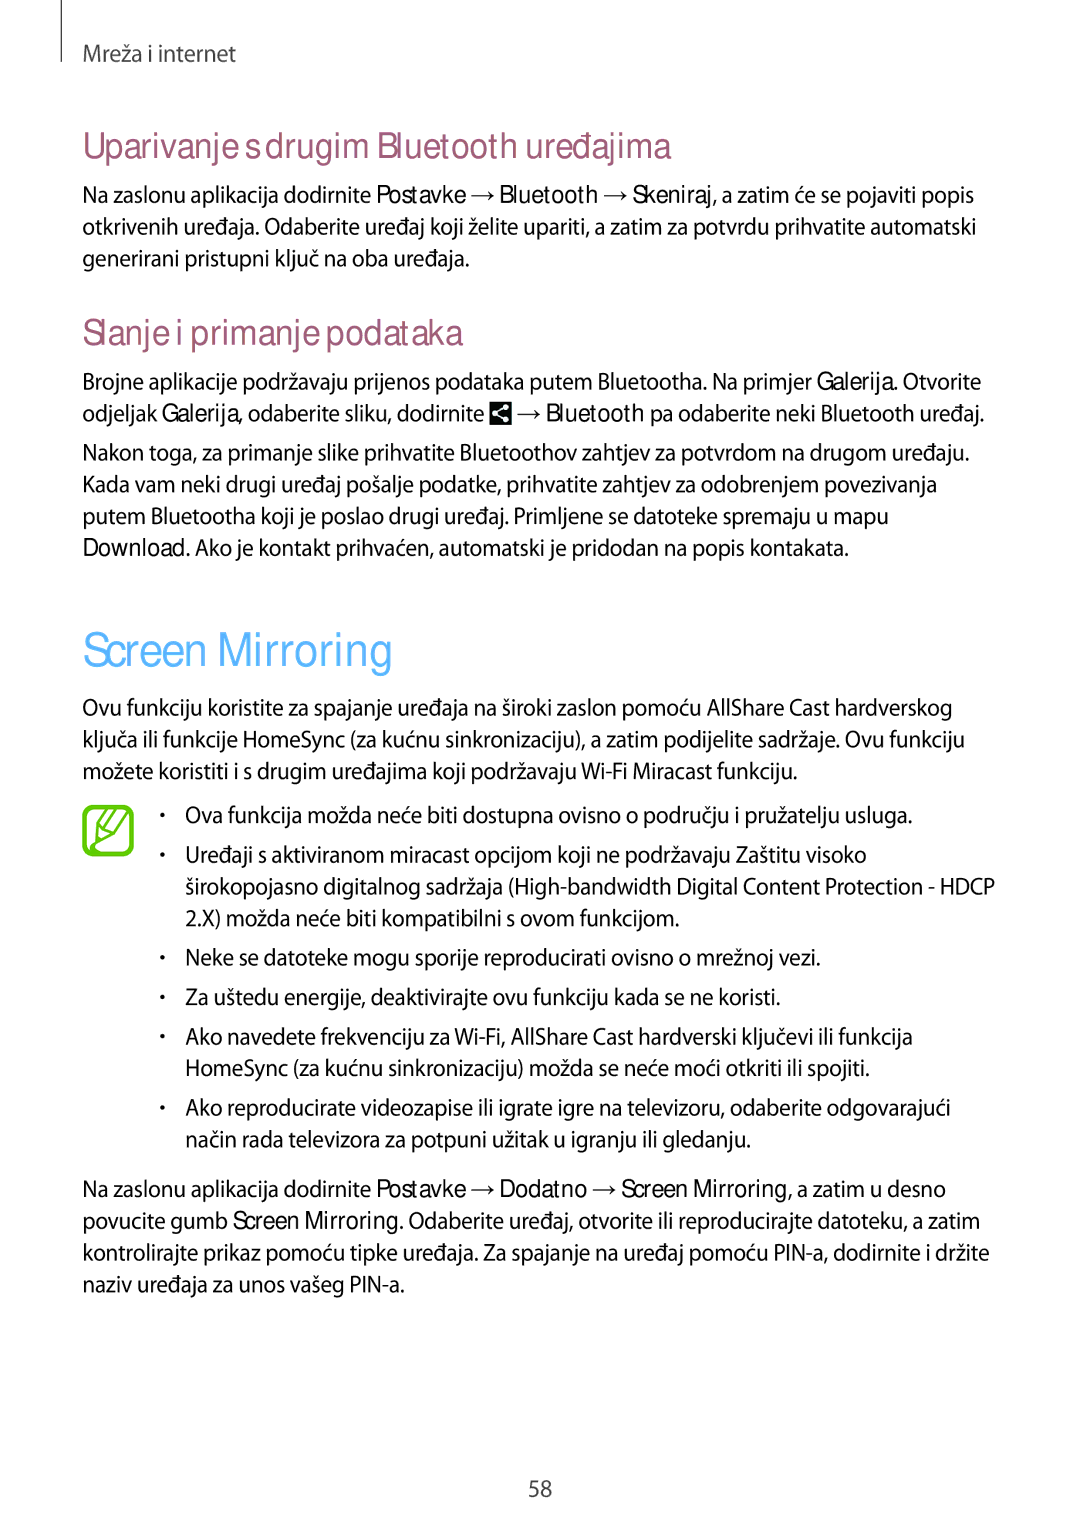 Samsung GT-N8010ZWASMO manual Screen Mirroring, Uparivanje s drugim Bluetooth uređajima, Slanje i primanje podataka 